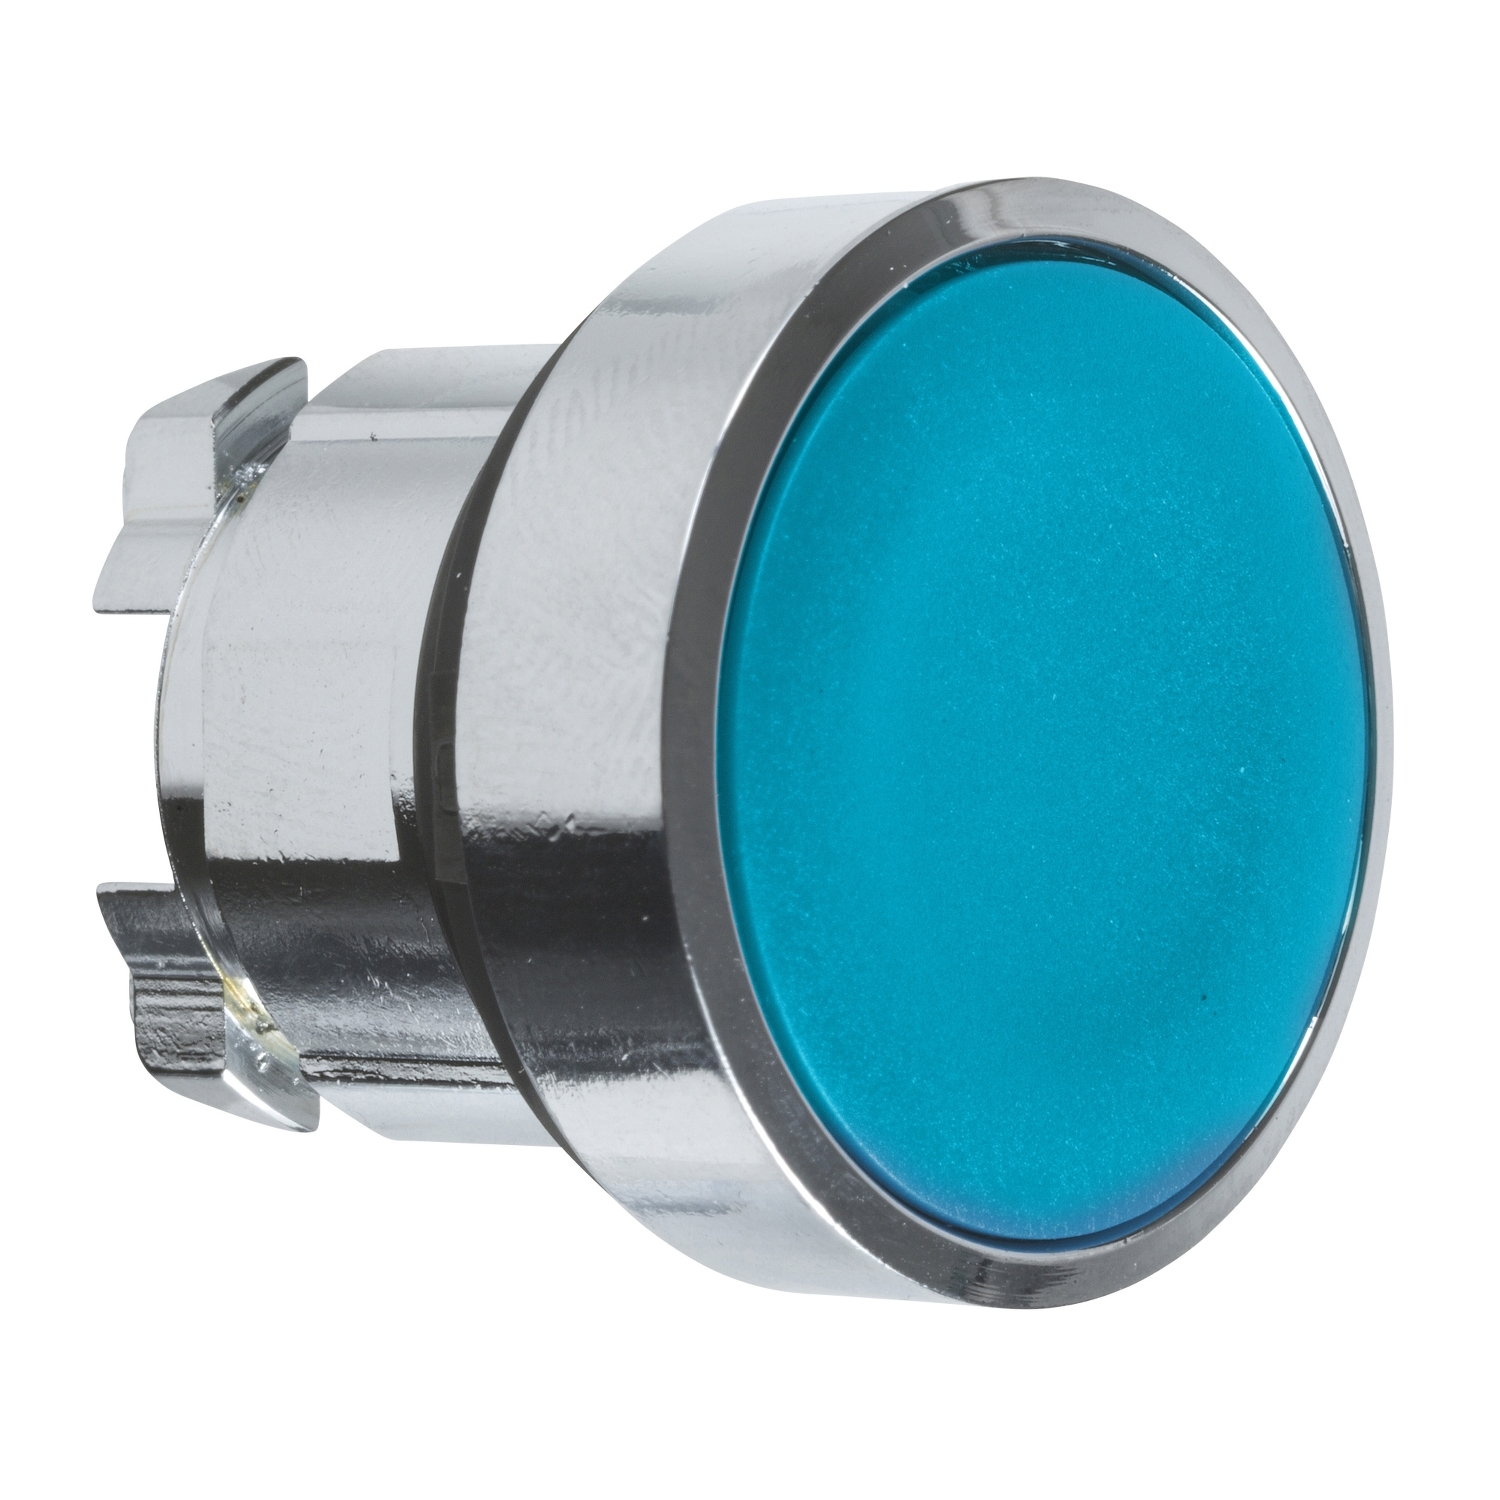 SCHNEIDER ELECTRIC XB4 - Cabezal pulsador rasante, metálico, azul